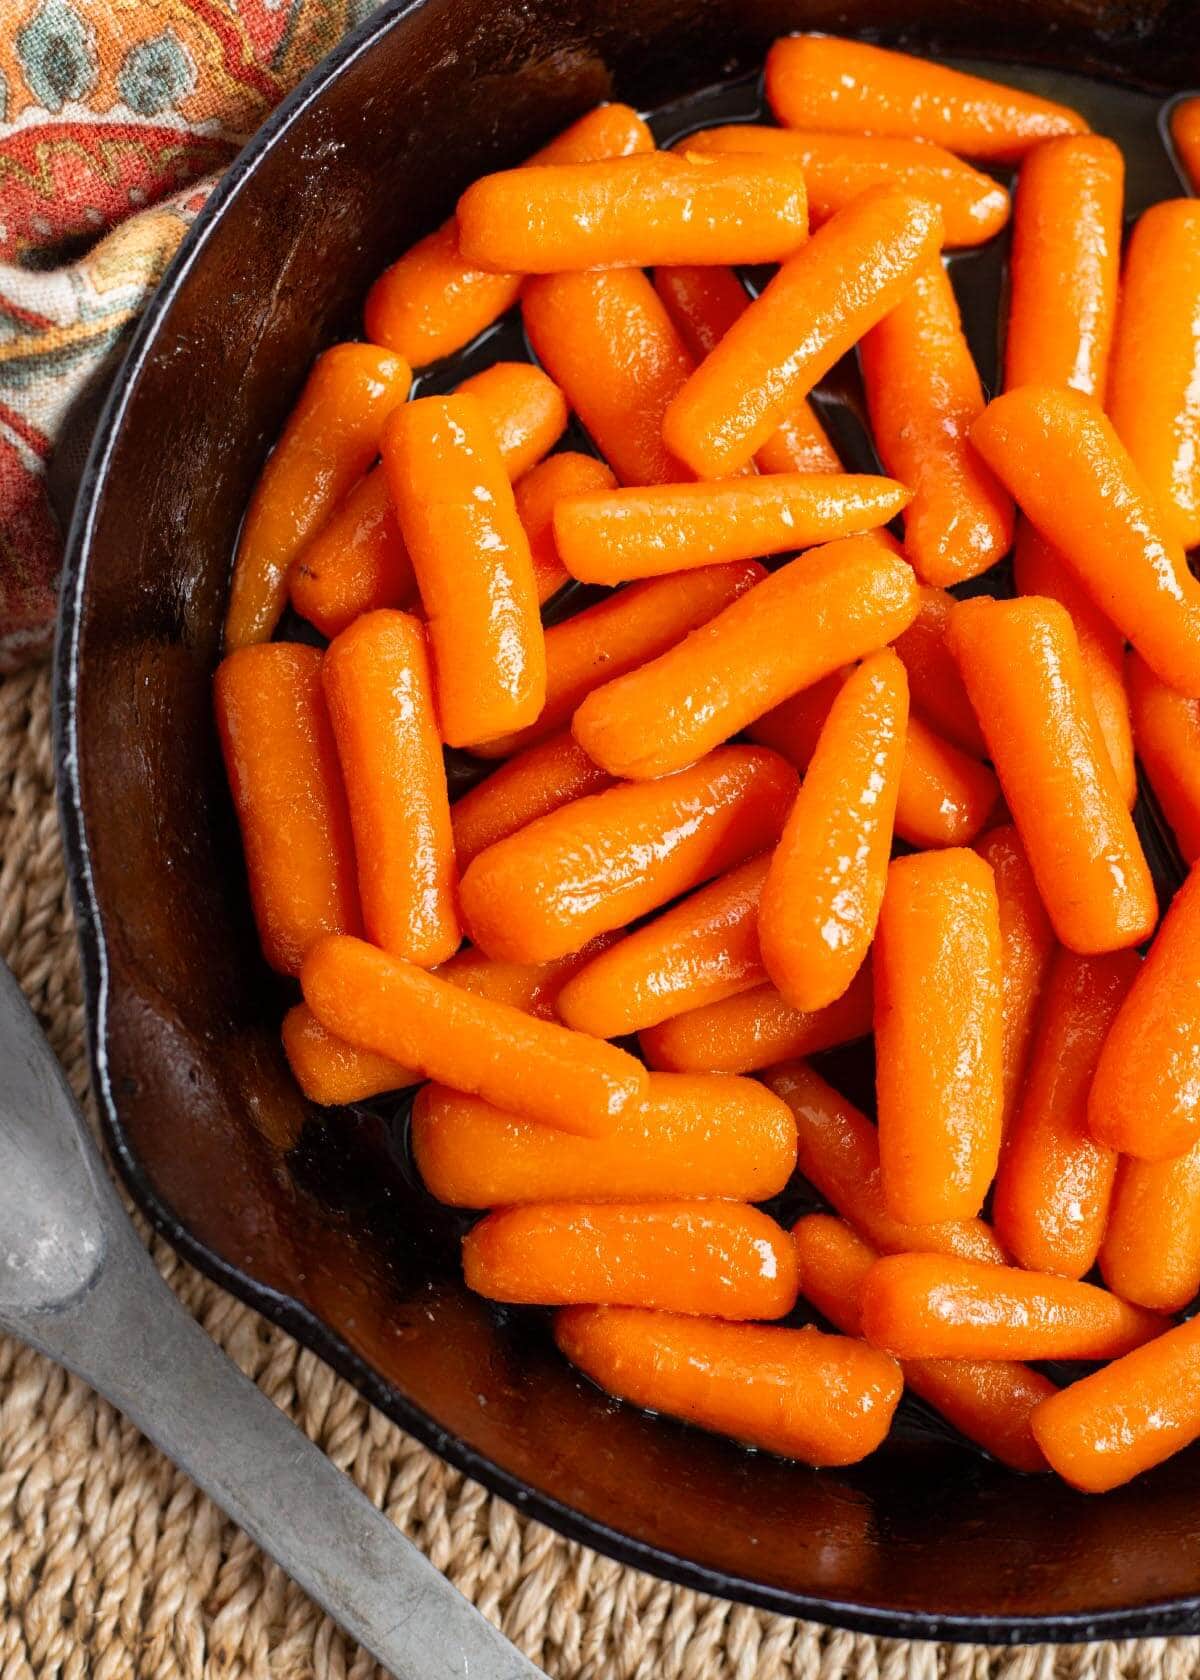 Brown Sugar Glazed Carrots in a black skillet